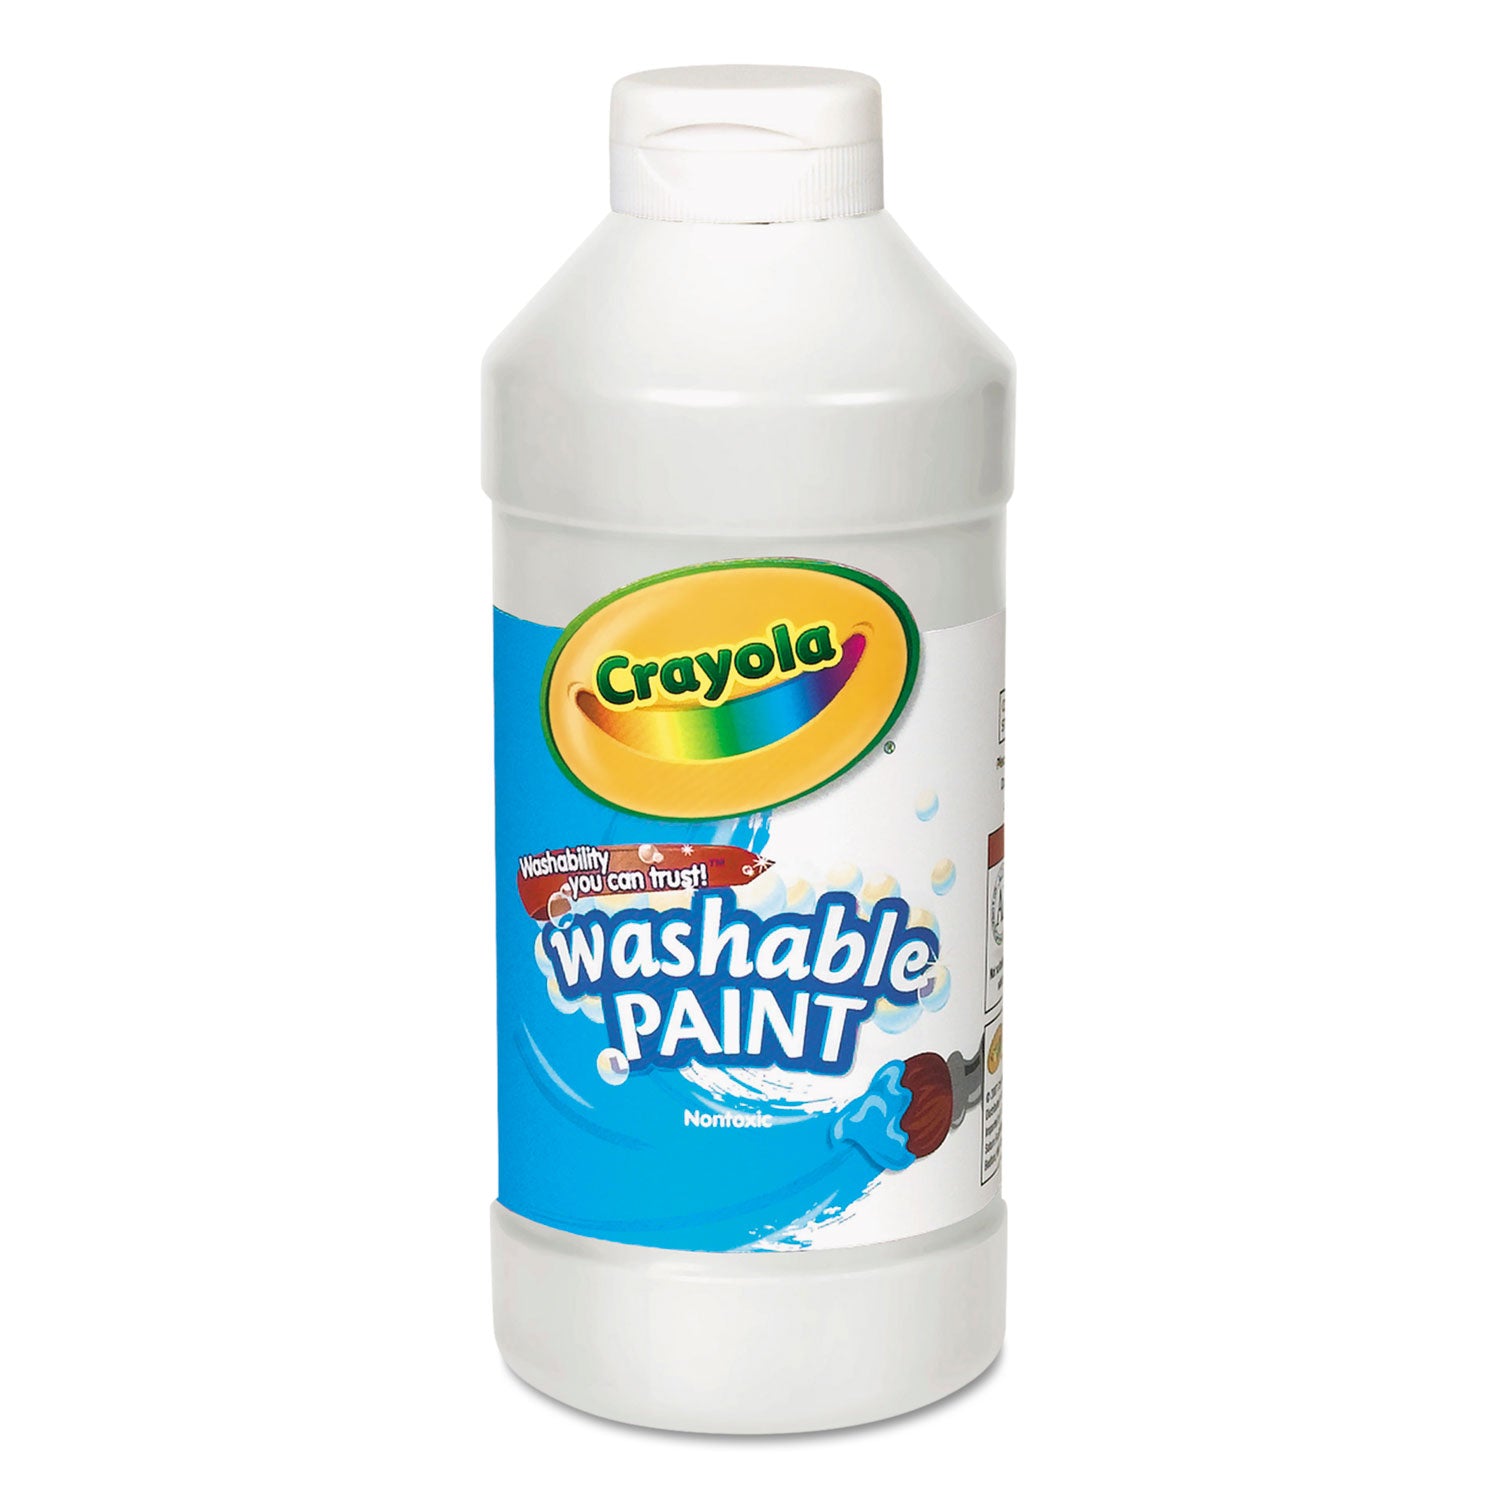 Washable Paint, White, 16 oz Bottle - 